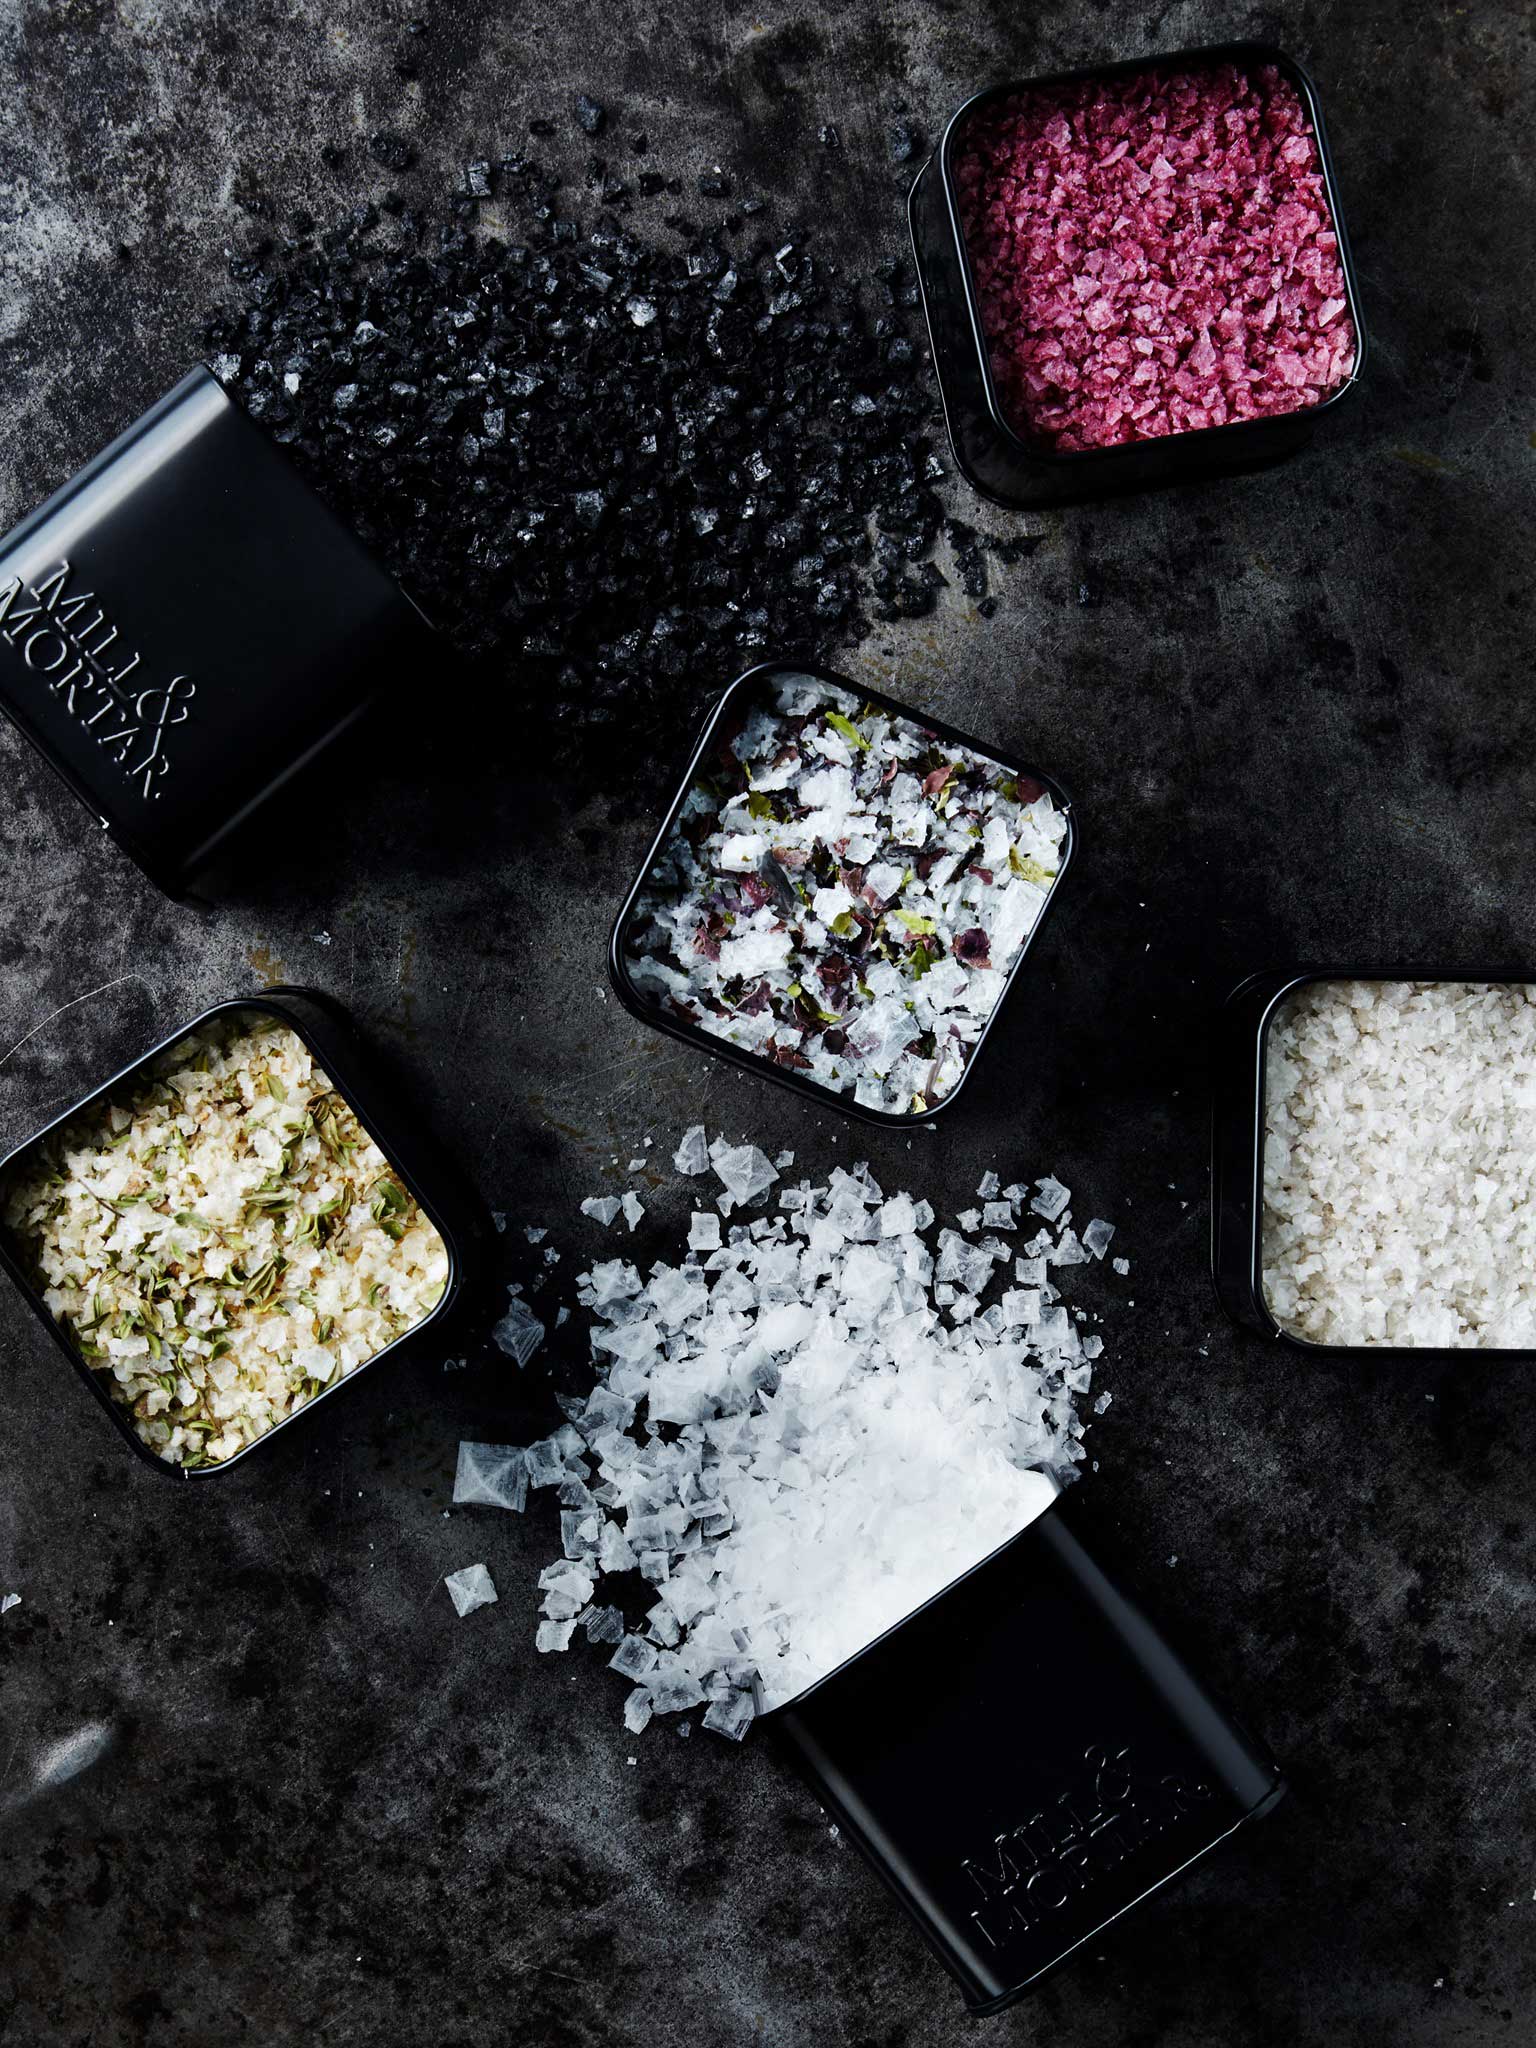 Finishing Salts - zeg nooit zomaar zout tegen zout 